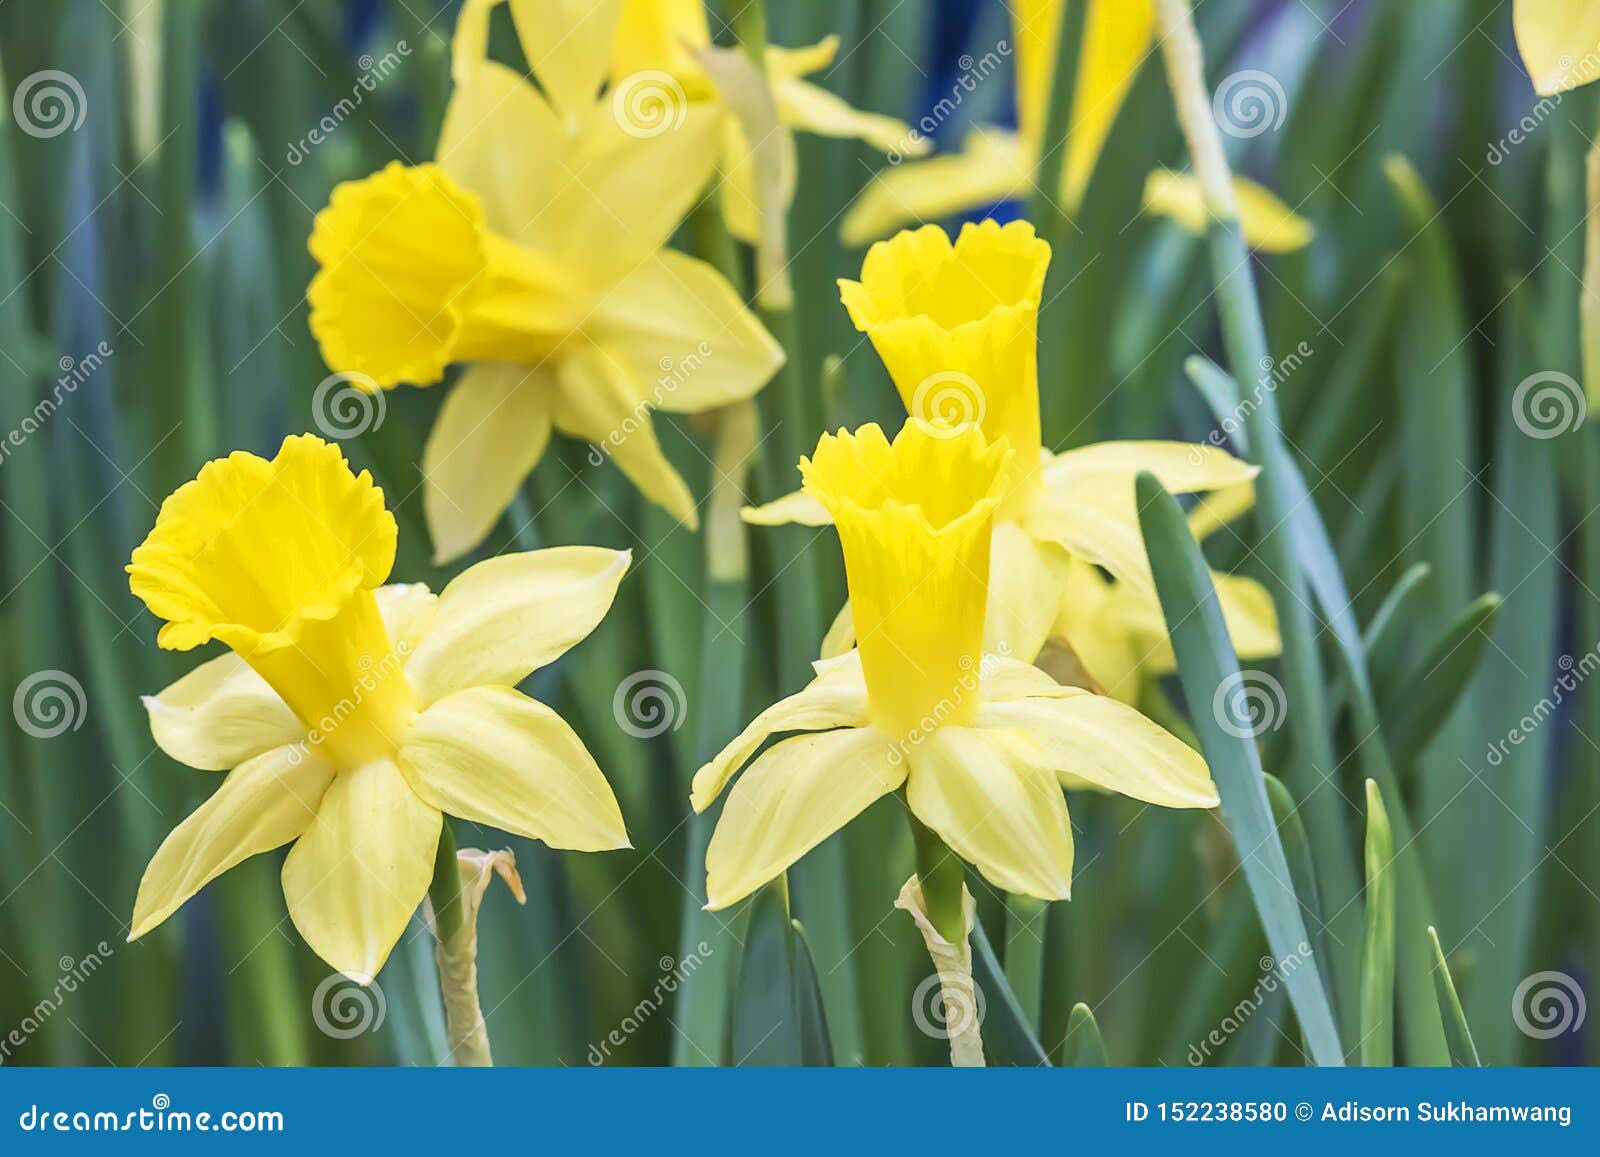 美丽的黄色黄水仙花在庭院里库存照片 图片包括有美丽的黄色黄水仙花在庭院里